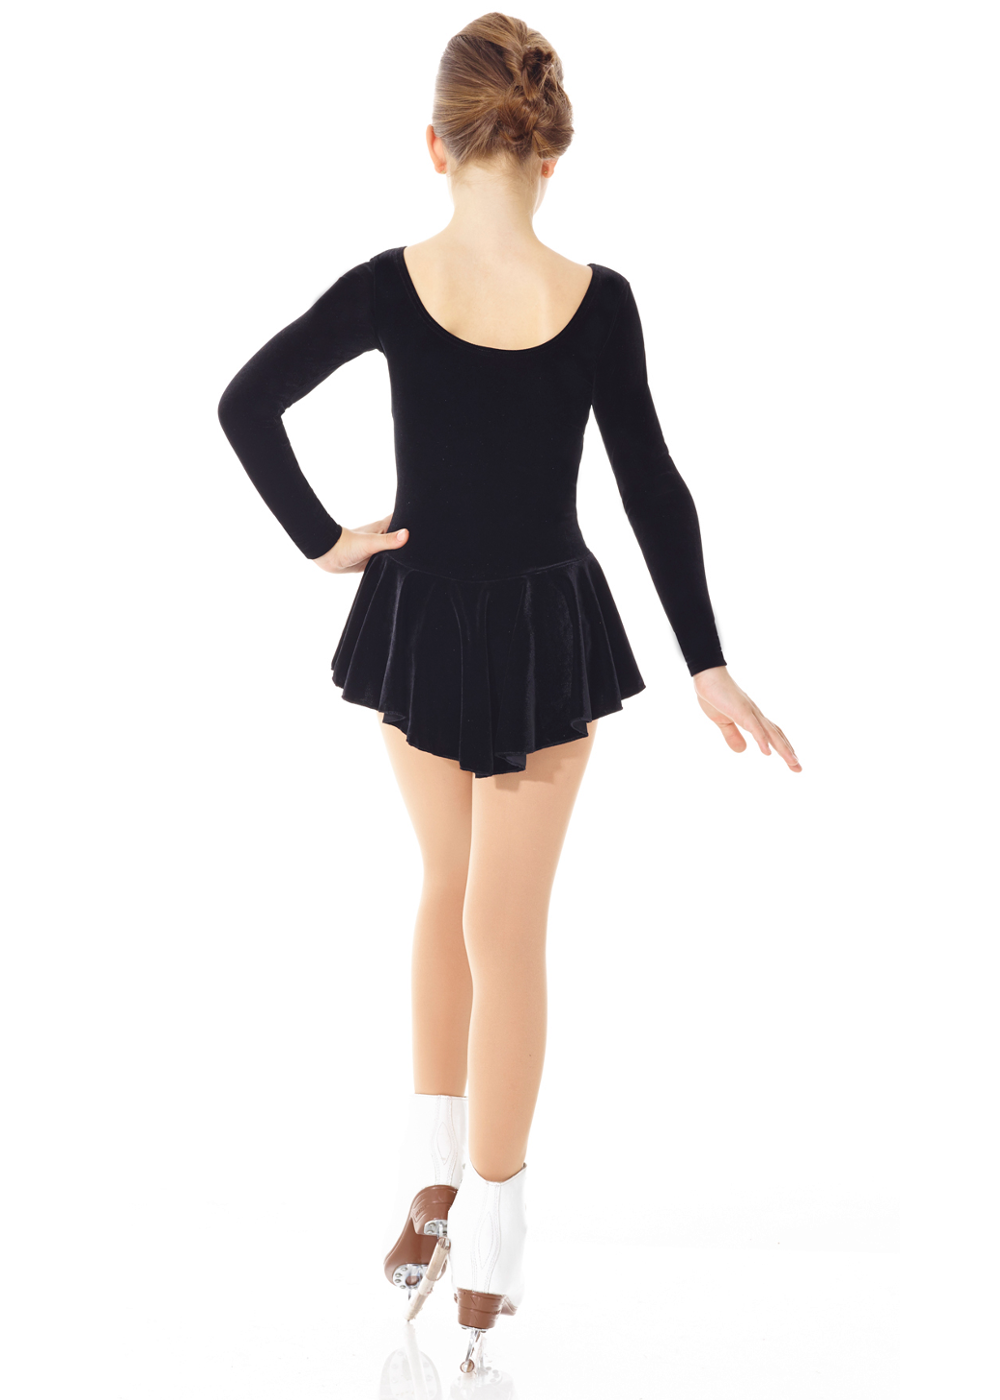 Mondor 2850 Examination Dress in Black Velvet - Childrens Sizes